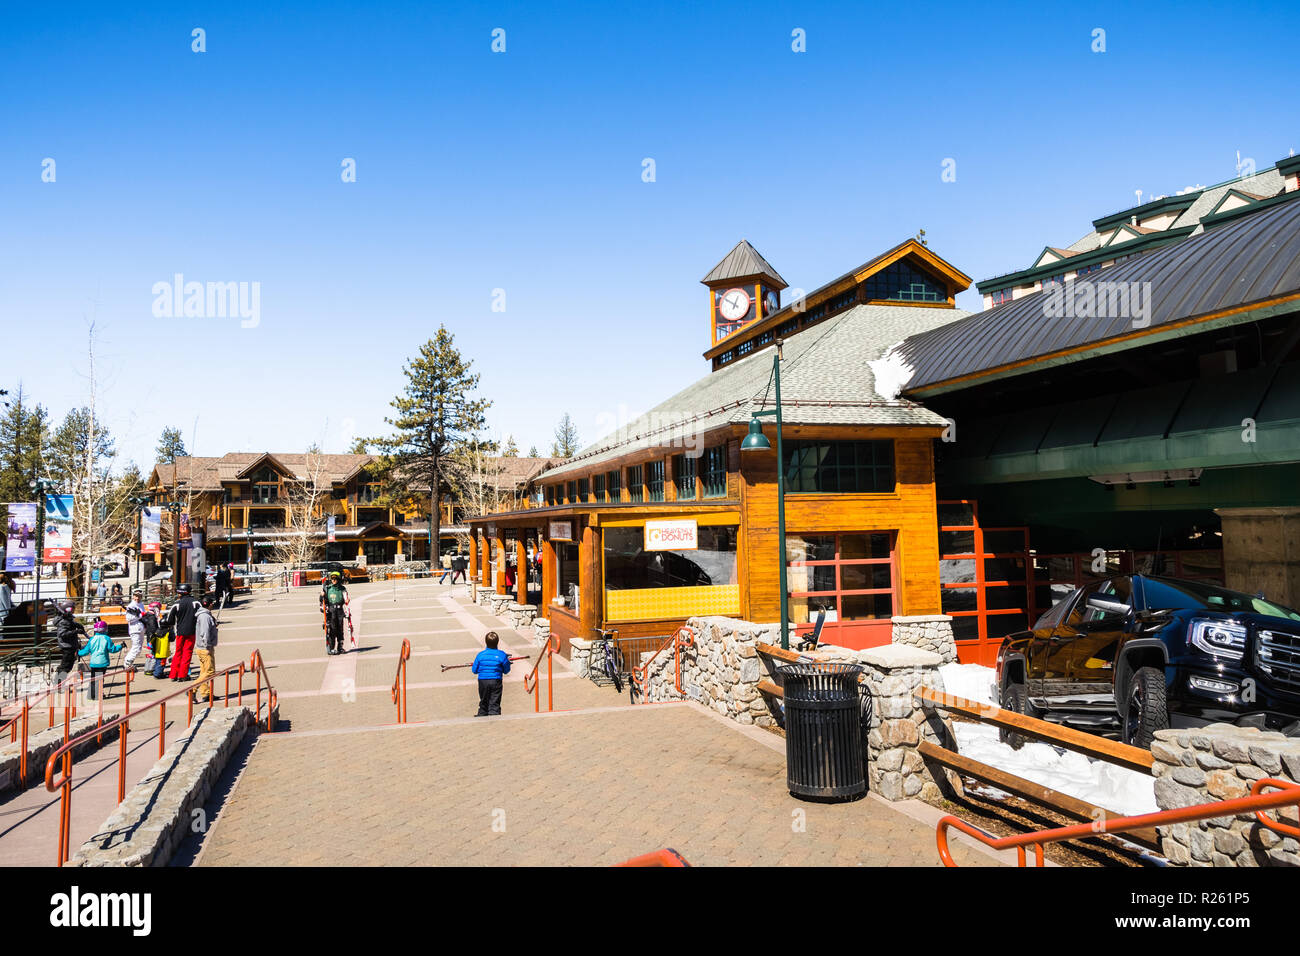 23 mars, 2018 South Lake Tahoe / CA / USA - des personnes qui exploitent les skis dans le centre-ville ; Gondola bâtiment sur la droite Banque D'Images